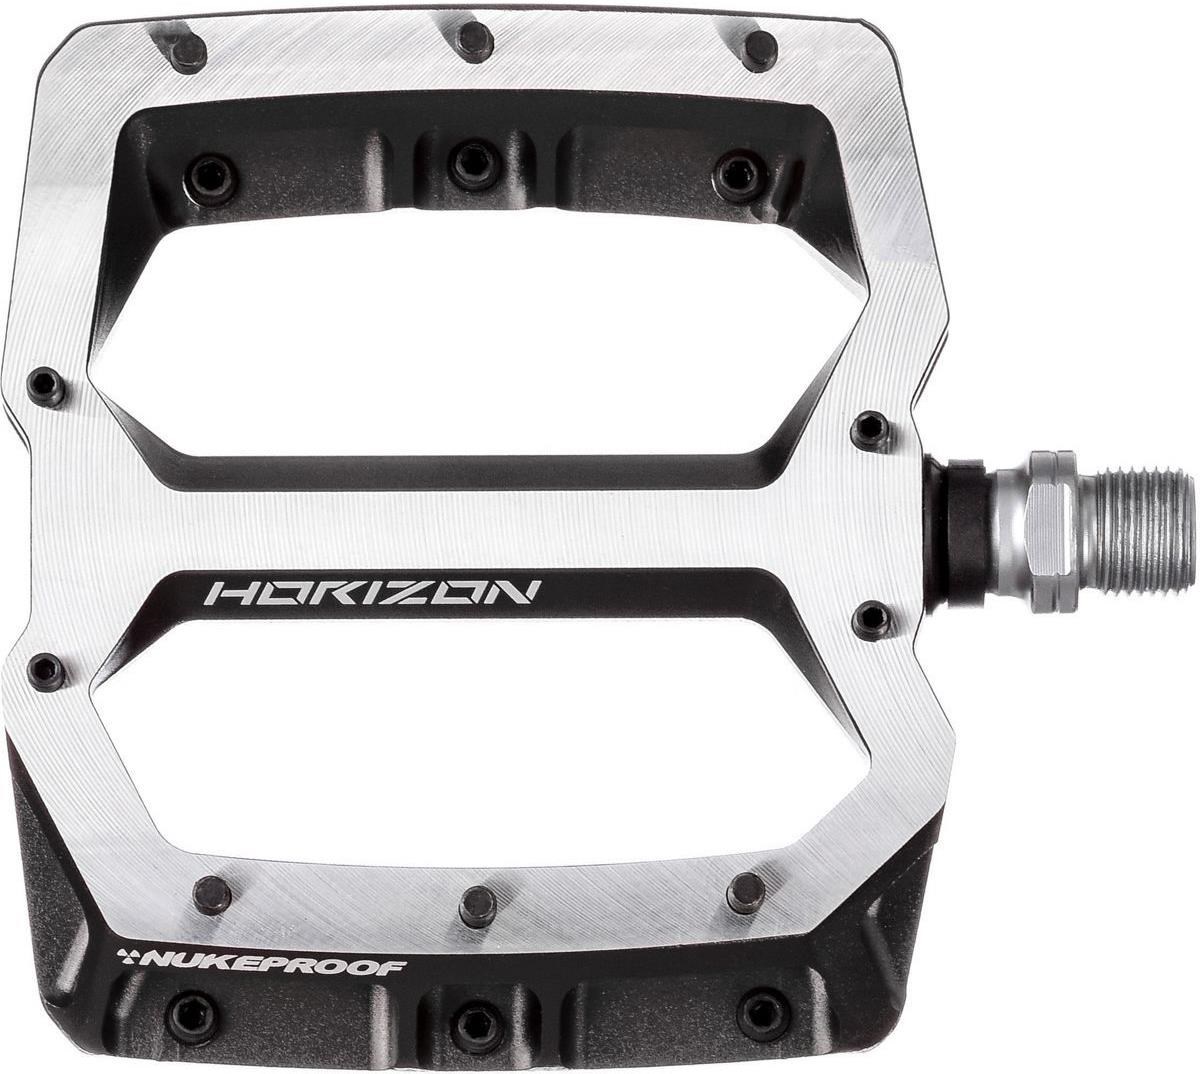 Nukeproof Horizon Pro Flat Pedals product image